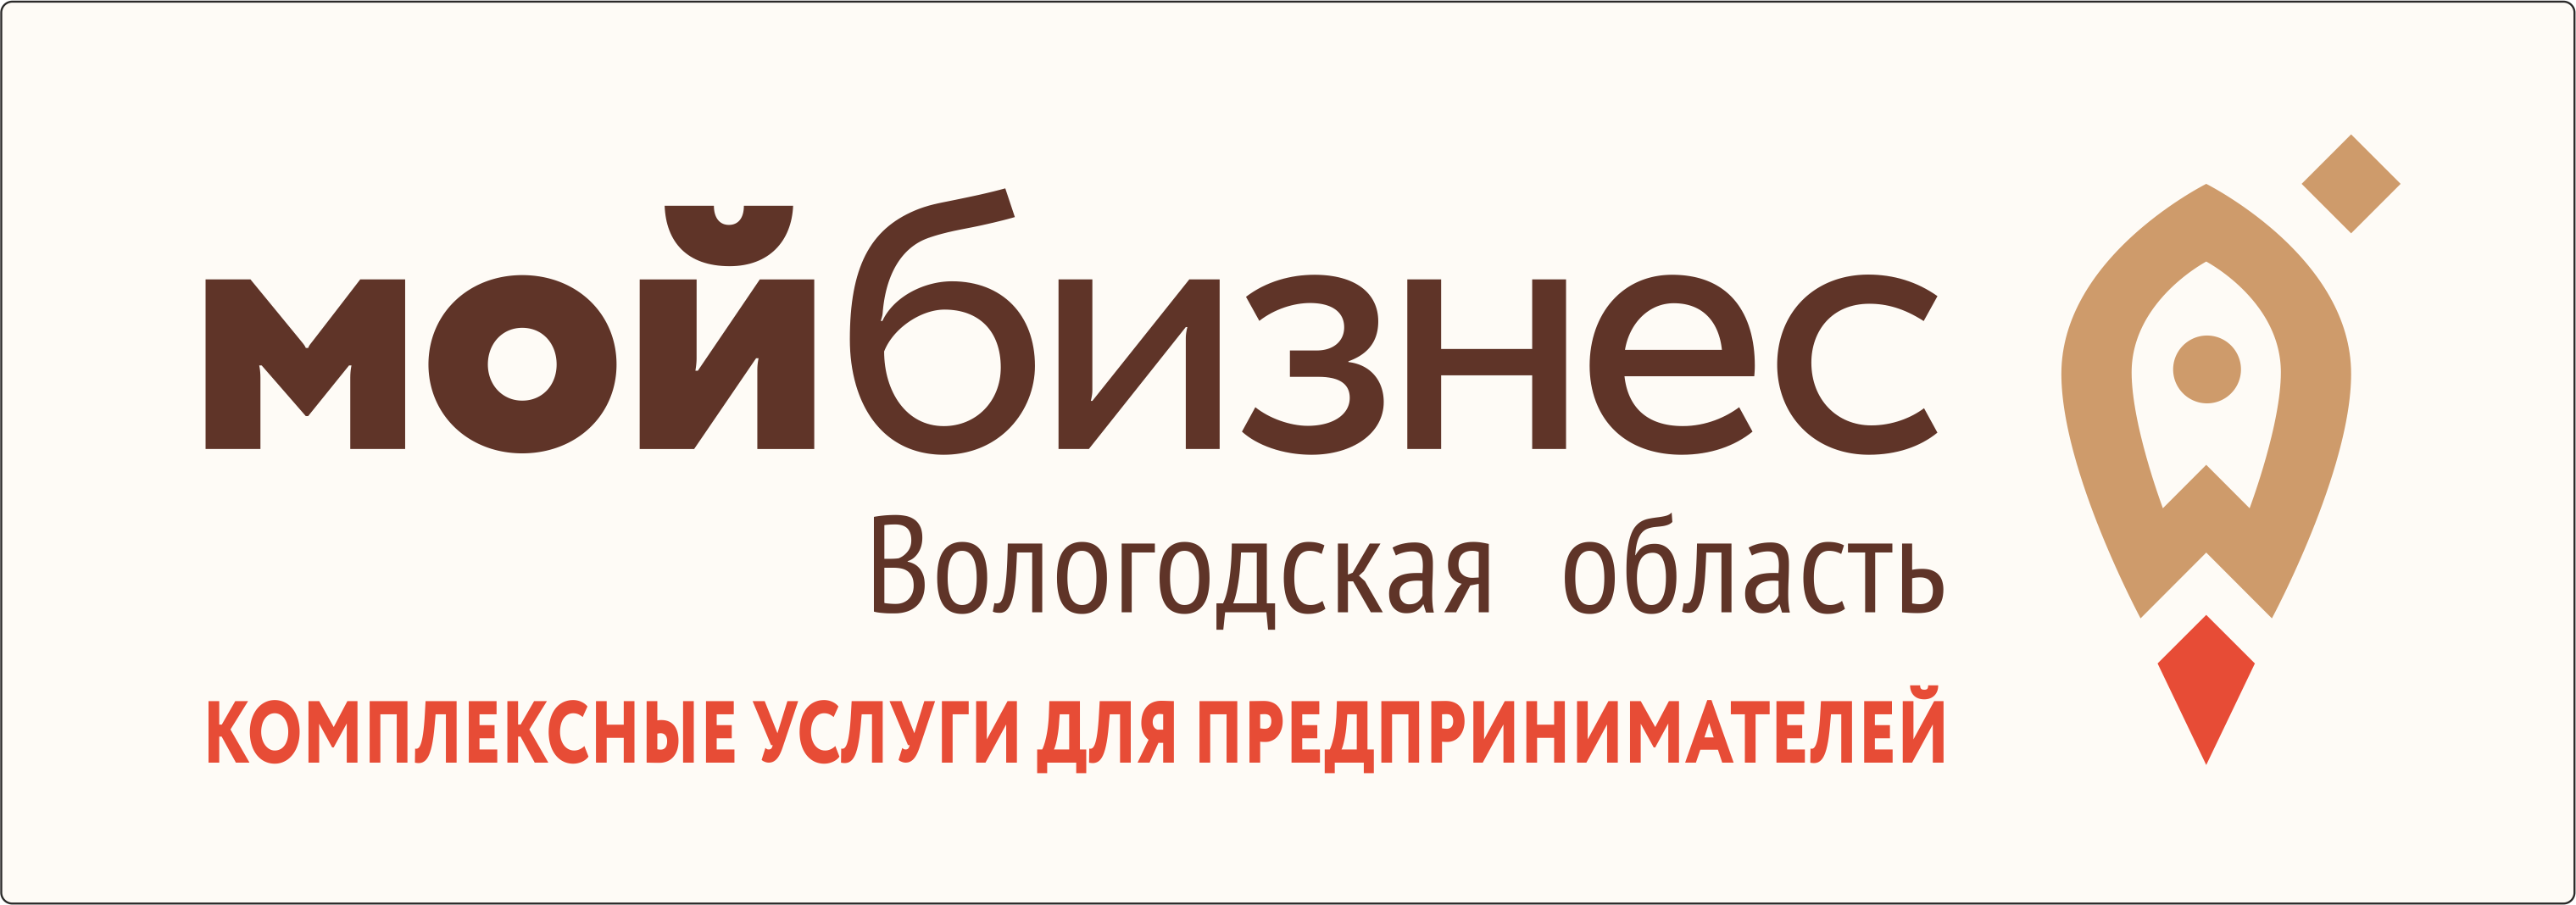 АНО «Региональный центр поддержки предпринимательства Вологодской области»